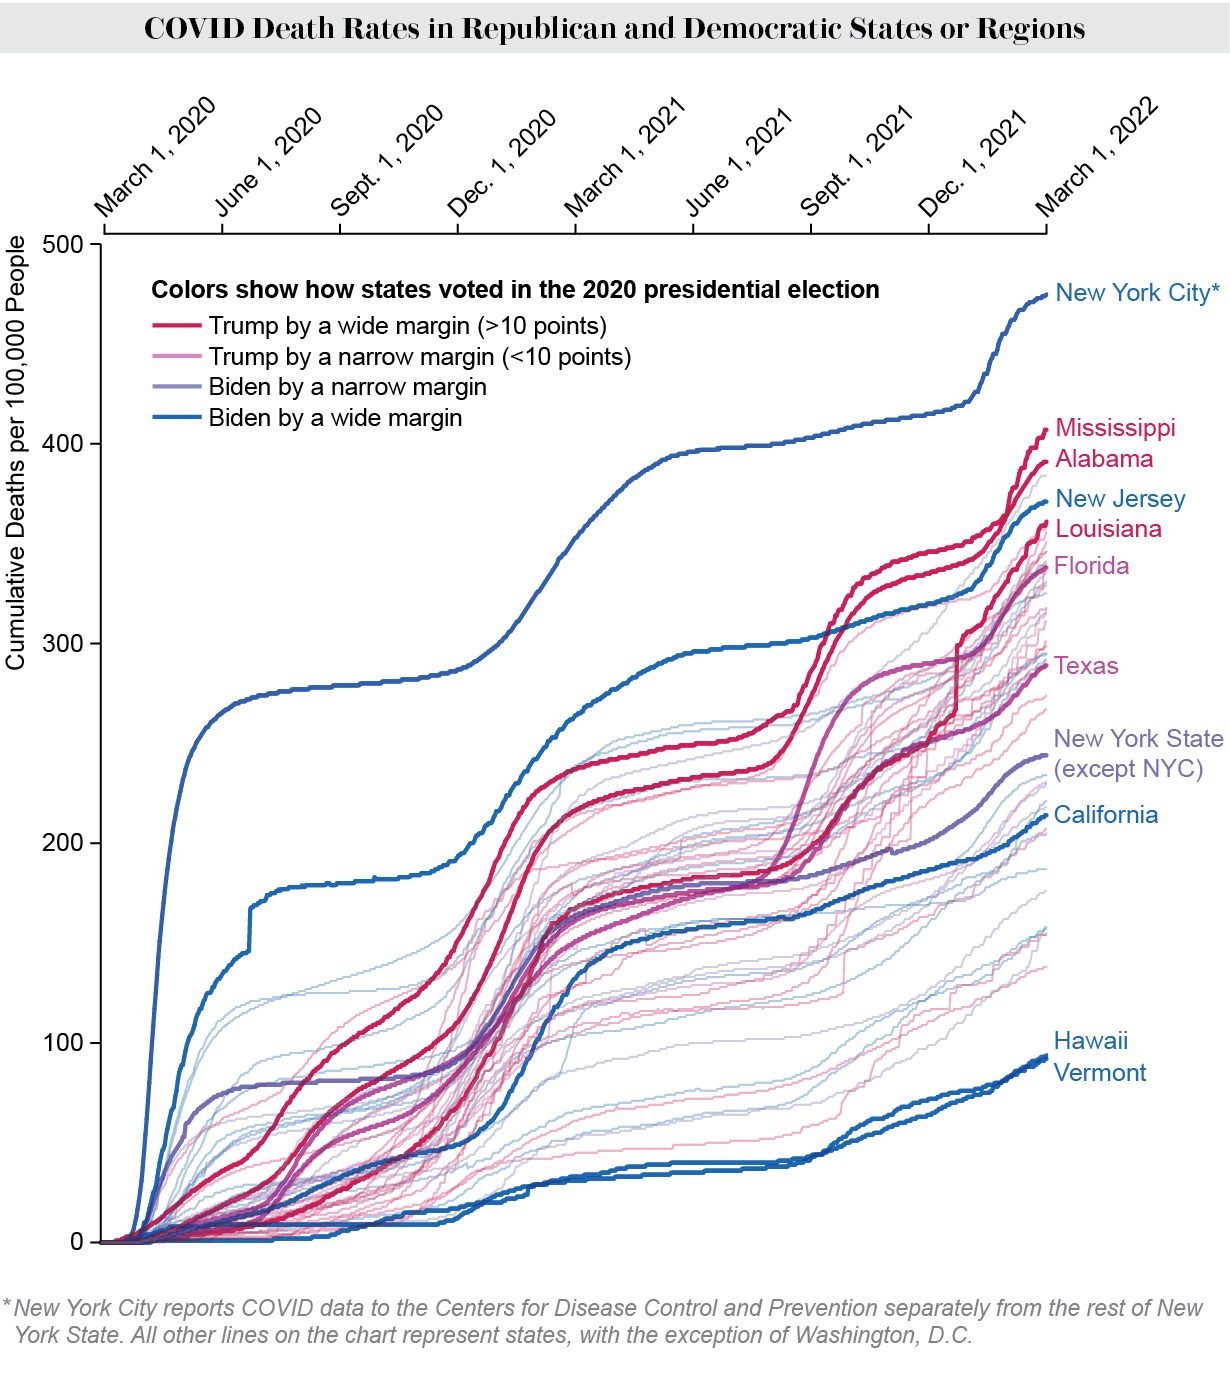 El gráfico muestra las tasas acumuladas de mortalidad por COVID en EE. UU. desde marzo de 2020 hasta marzo de 2022 en estados o regiones republicanos y demócratas.